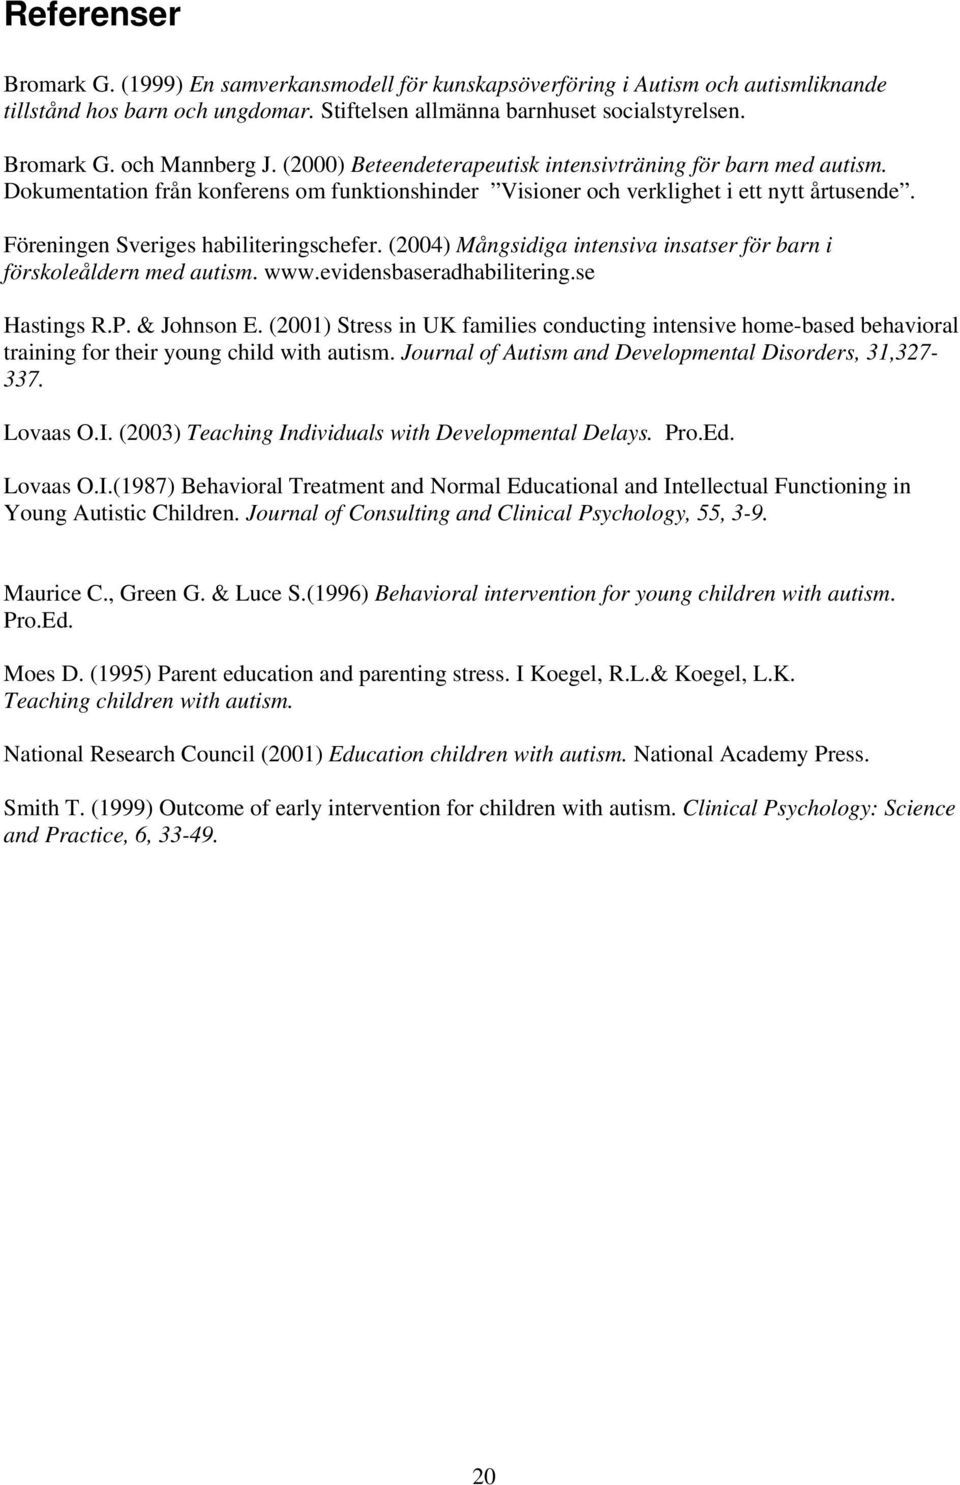 (2004) Mångsidiga intensiva insatser för barn i förskoleåldern med autism. www.evidensbaseradhabilitering.se Hastings R.P. & Johnson E.